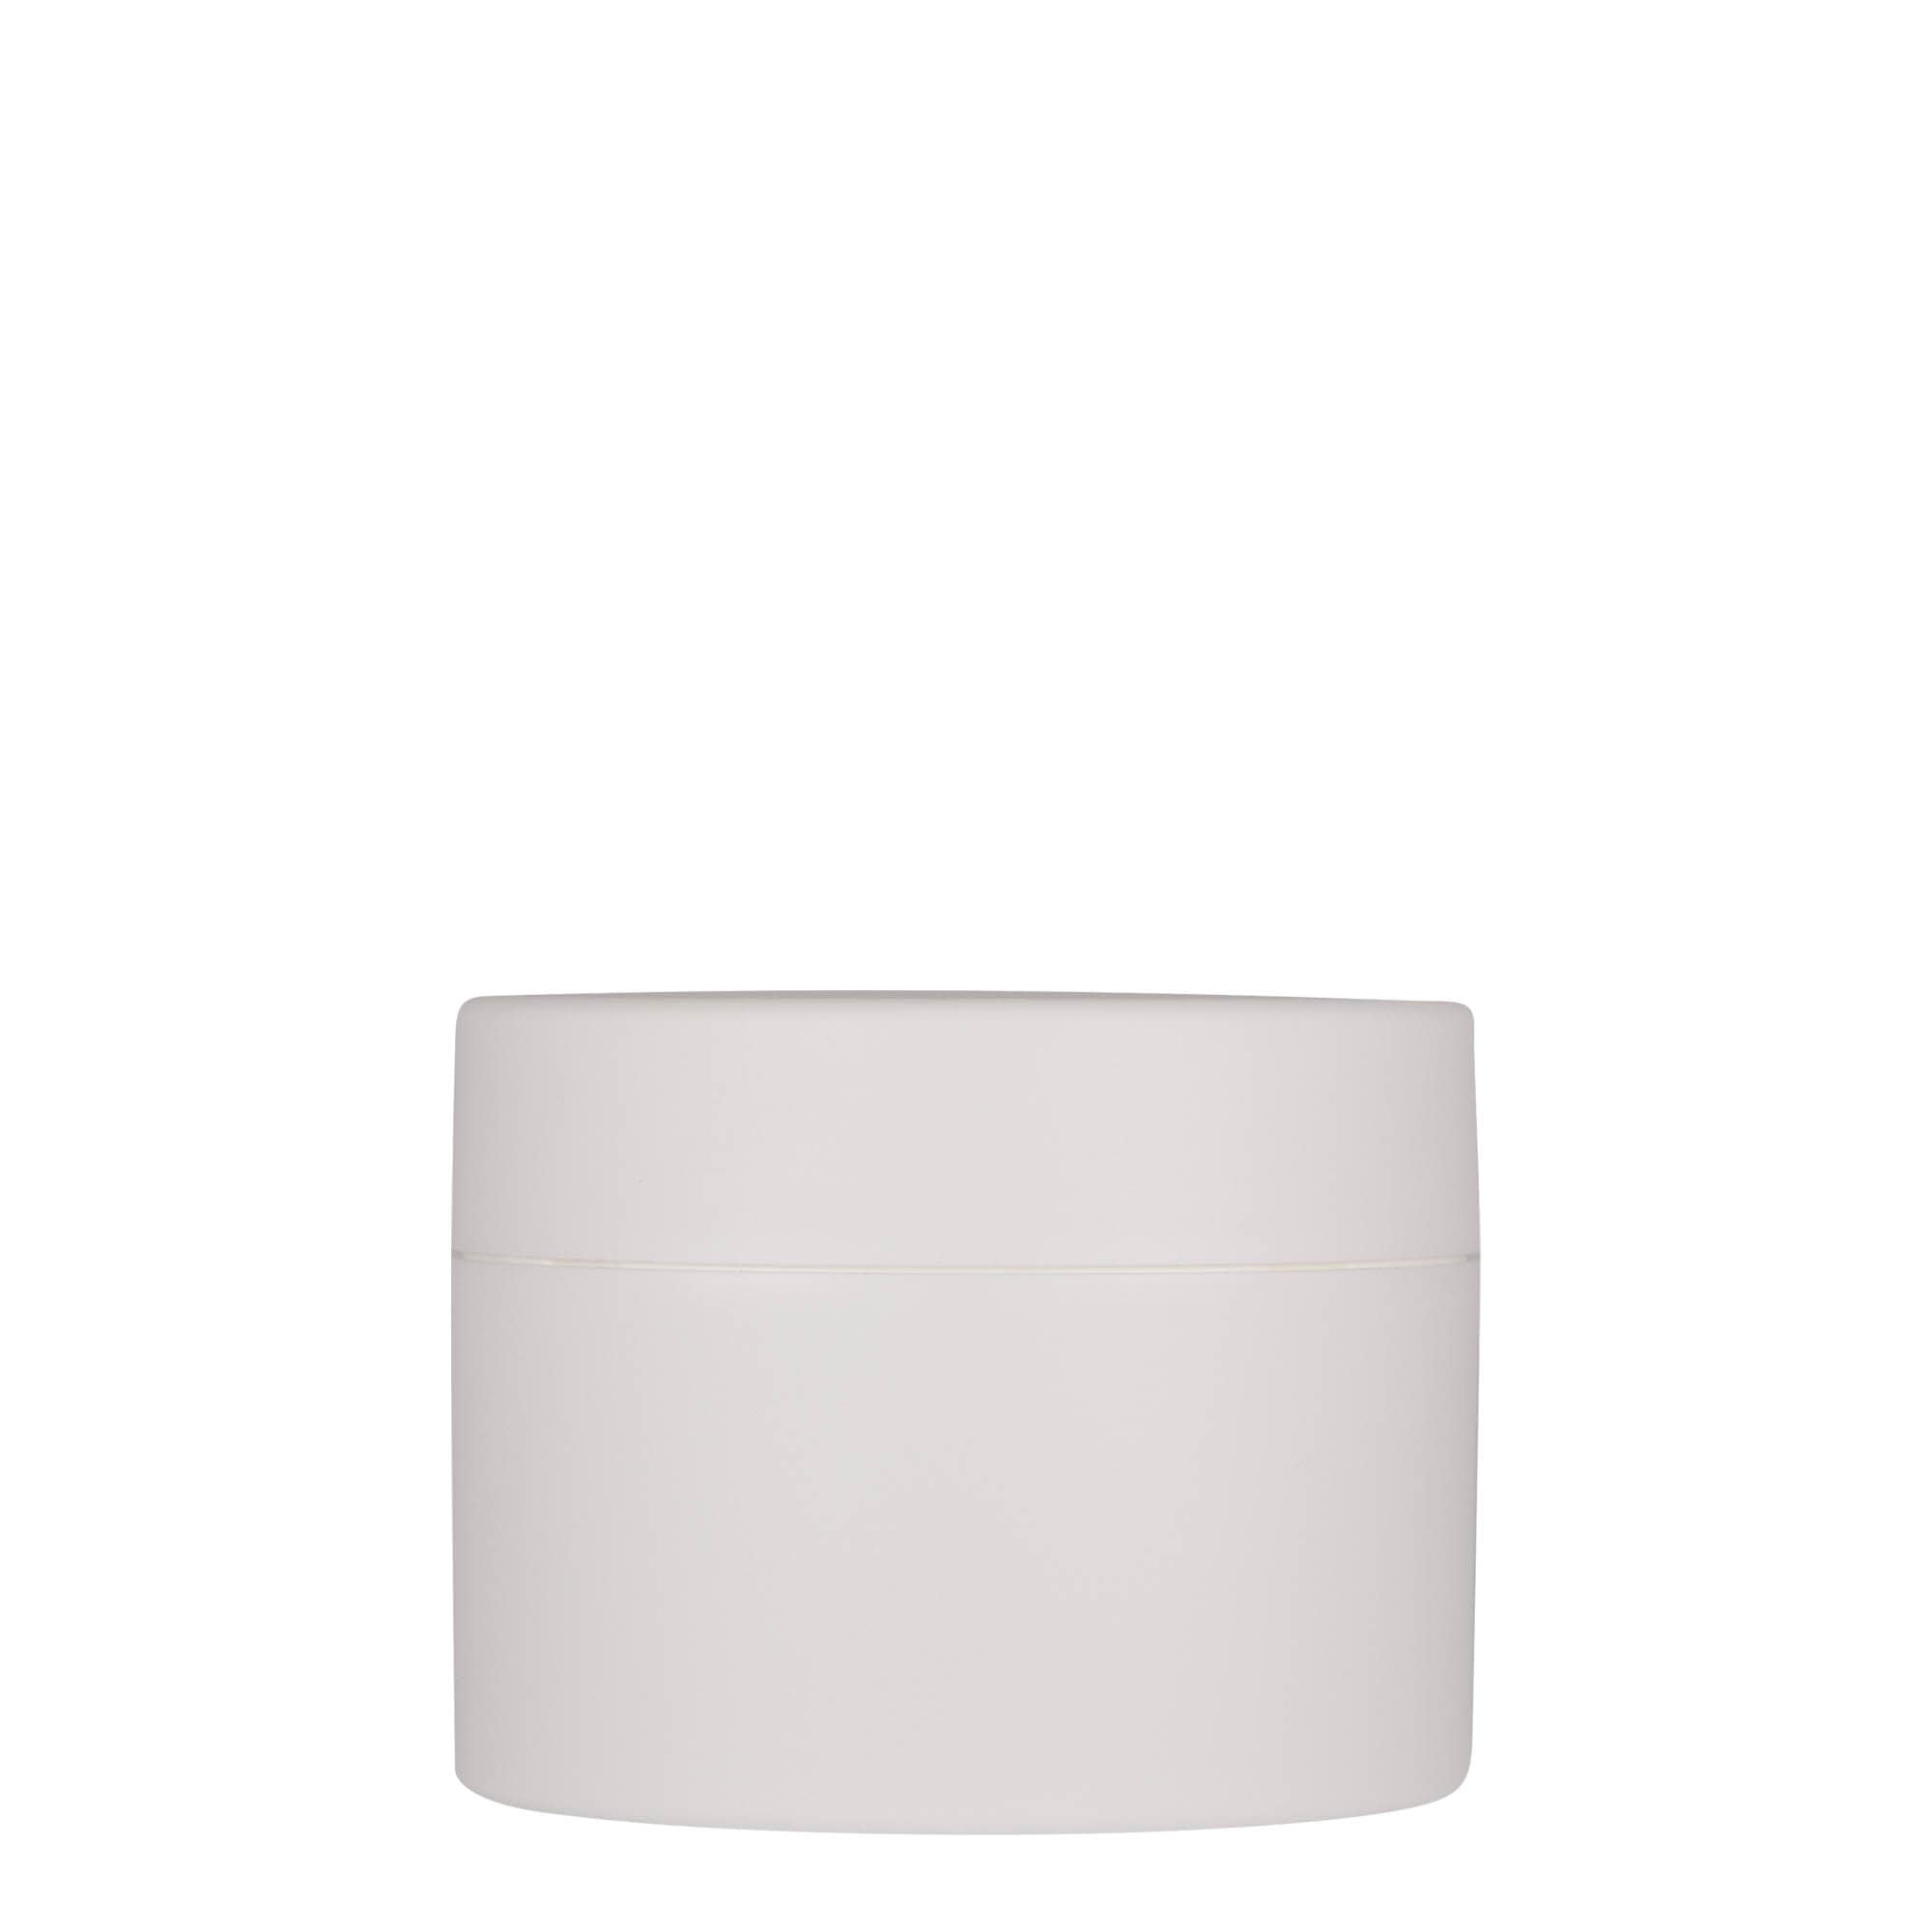 250 ml słoiczek z tworzywa sztucznego 'Antonella', PP, kolor biały, zamknięcie: zakrętka